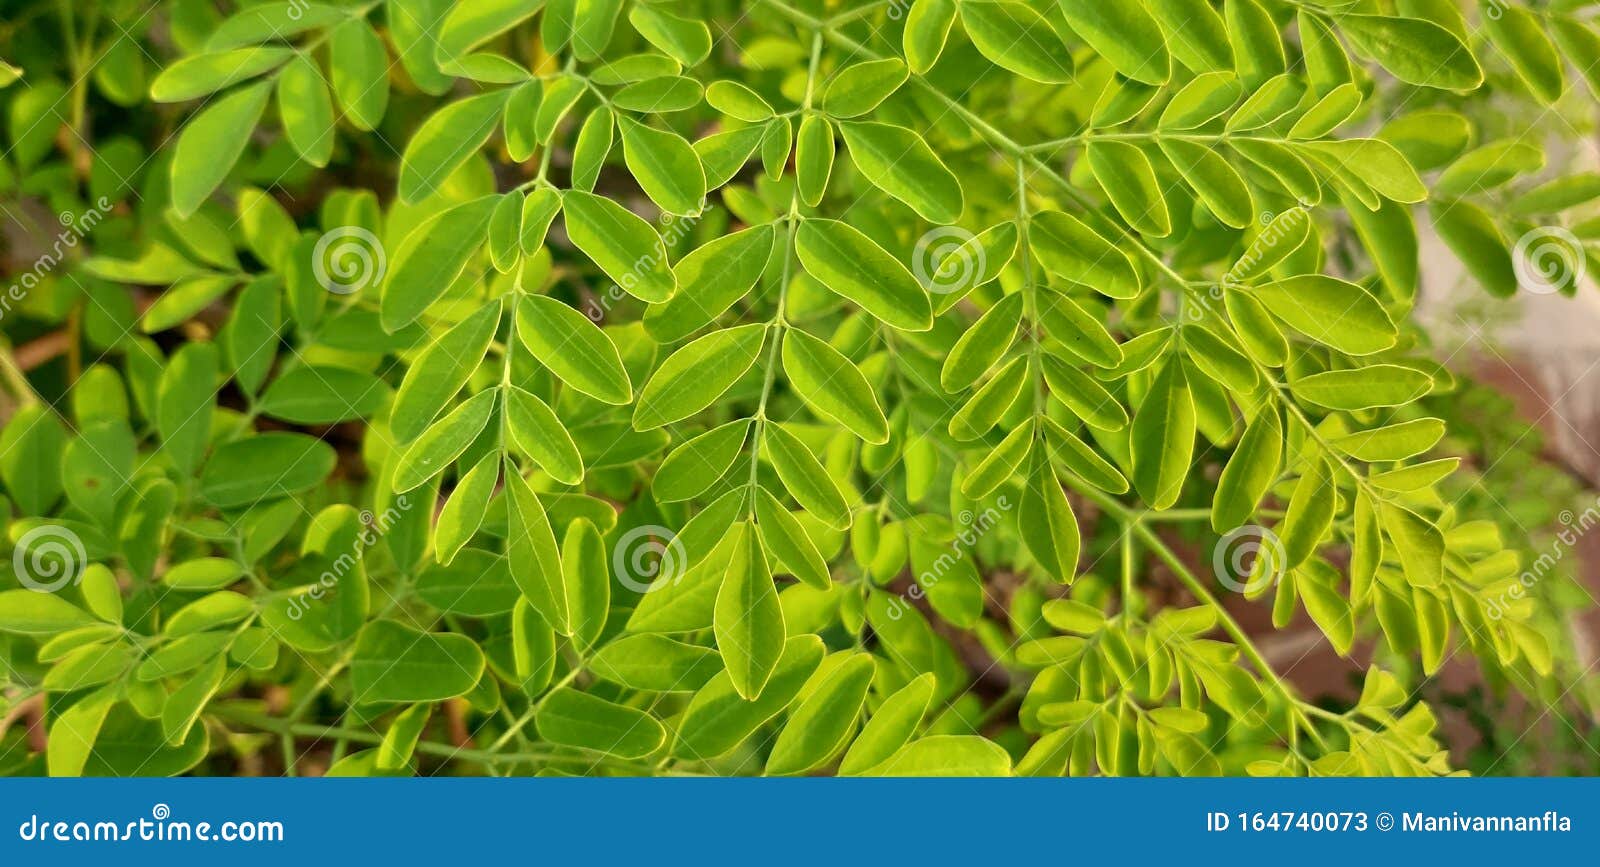 辣木 常用名称有辣木 鸡腿树 辣木 油树库存图片 图片包括有包括 公用 热带 地区 系列